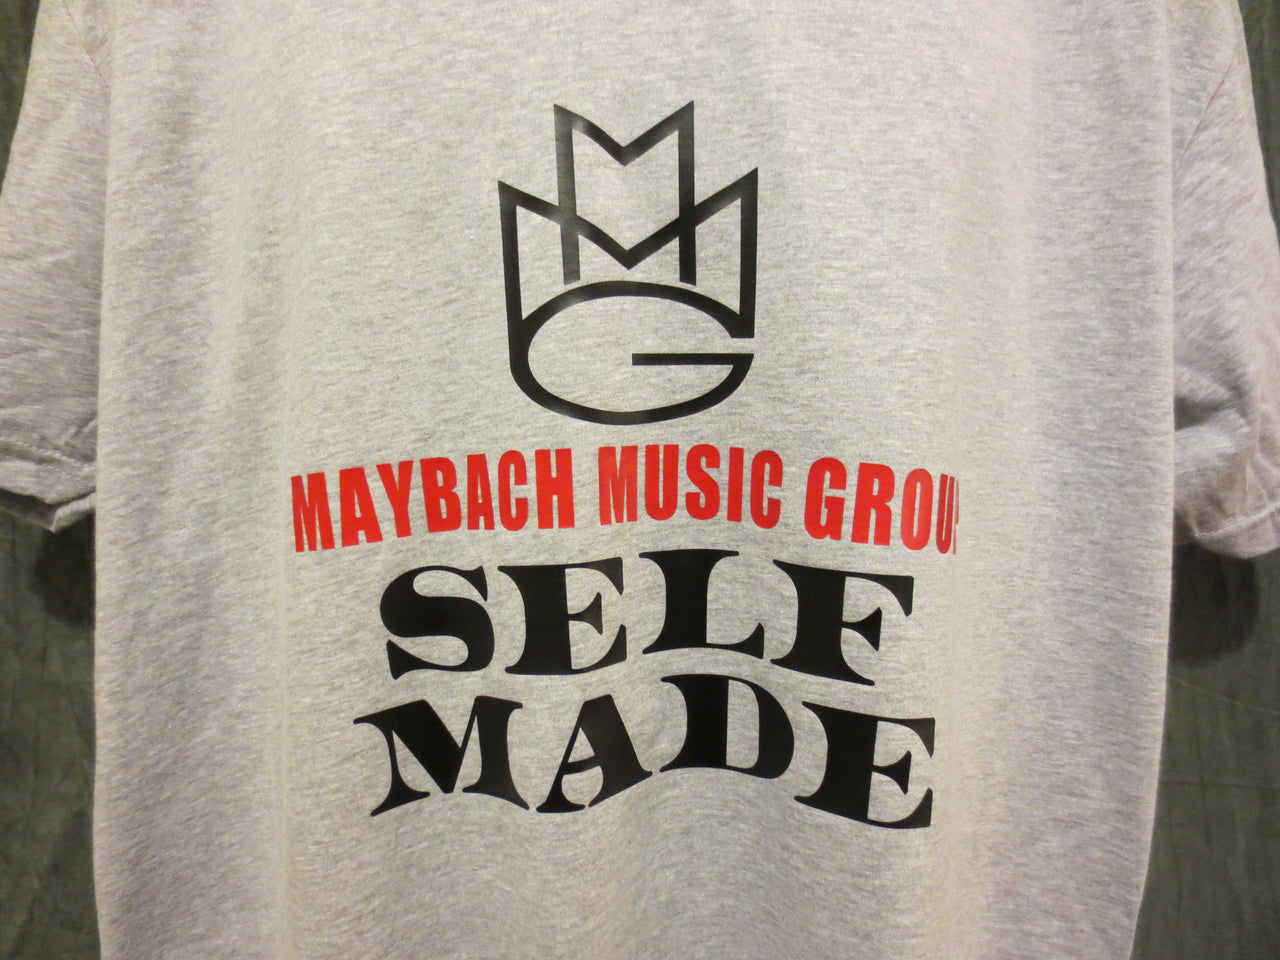 Maybach Music Group "Self Made" V-Neck Tshirt - TshirtNow.net - 9